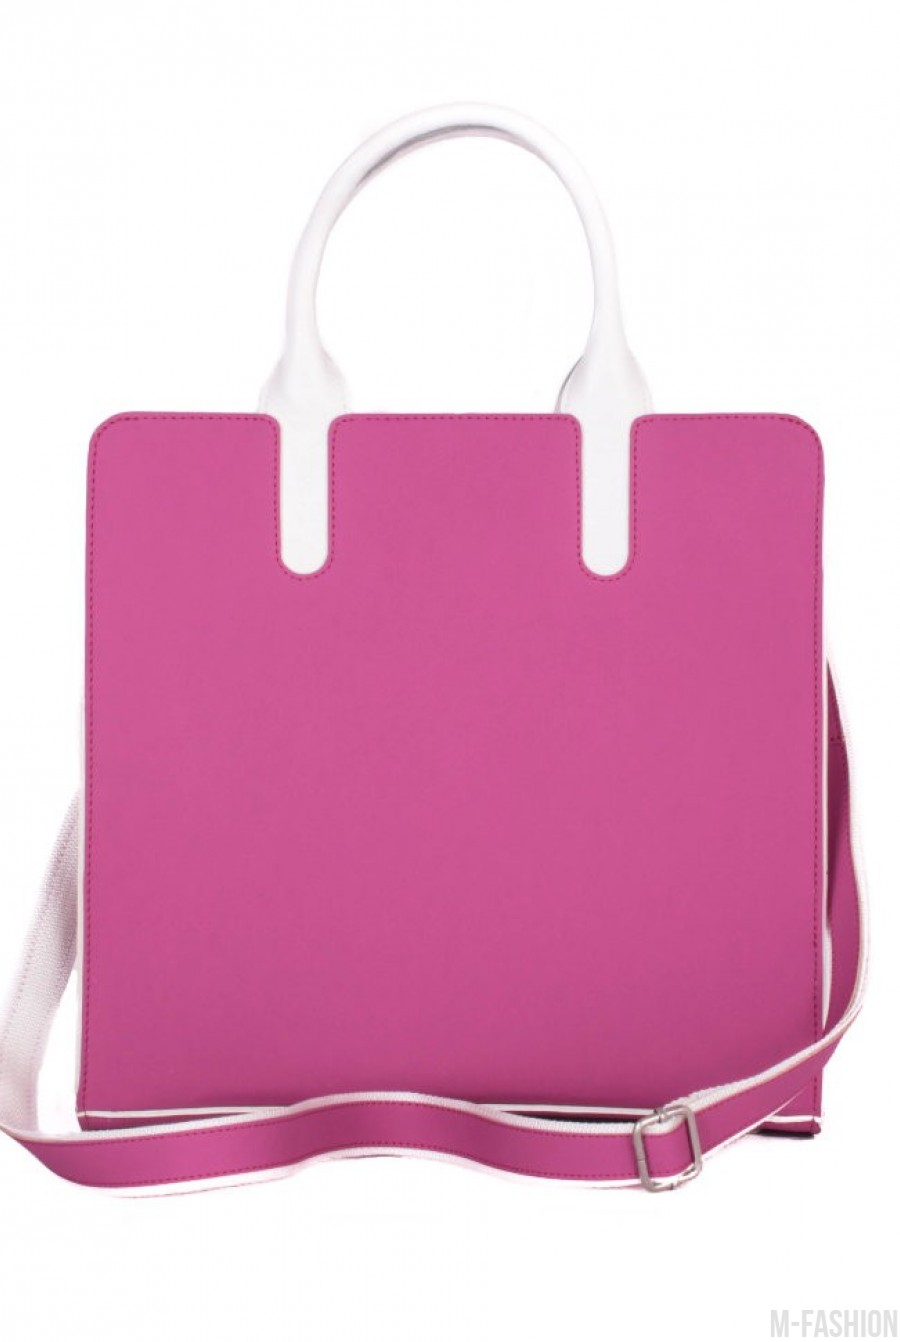 Модная сумочка стильного дизайна из качественного неопрена- Фото 3